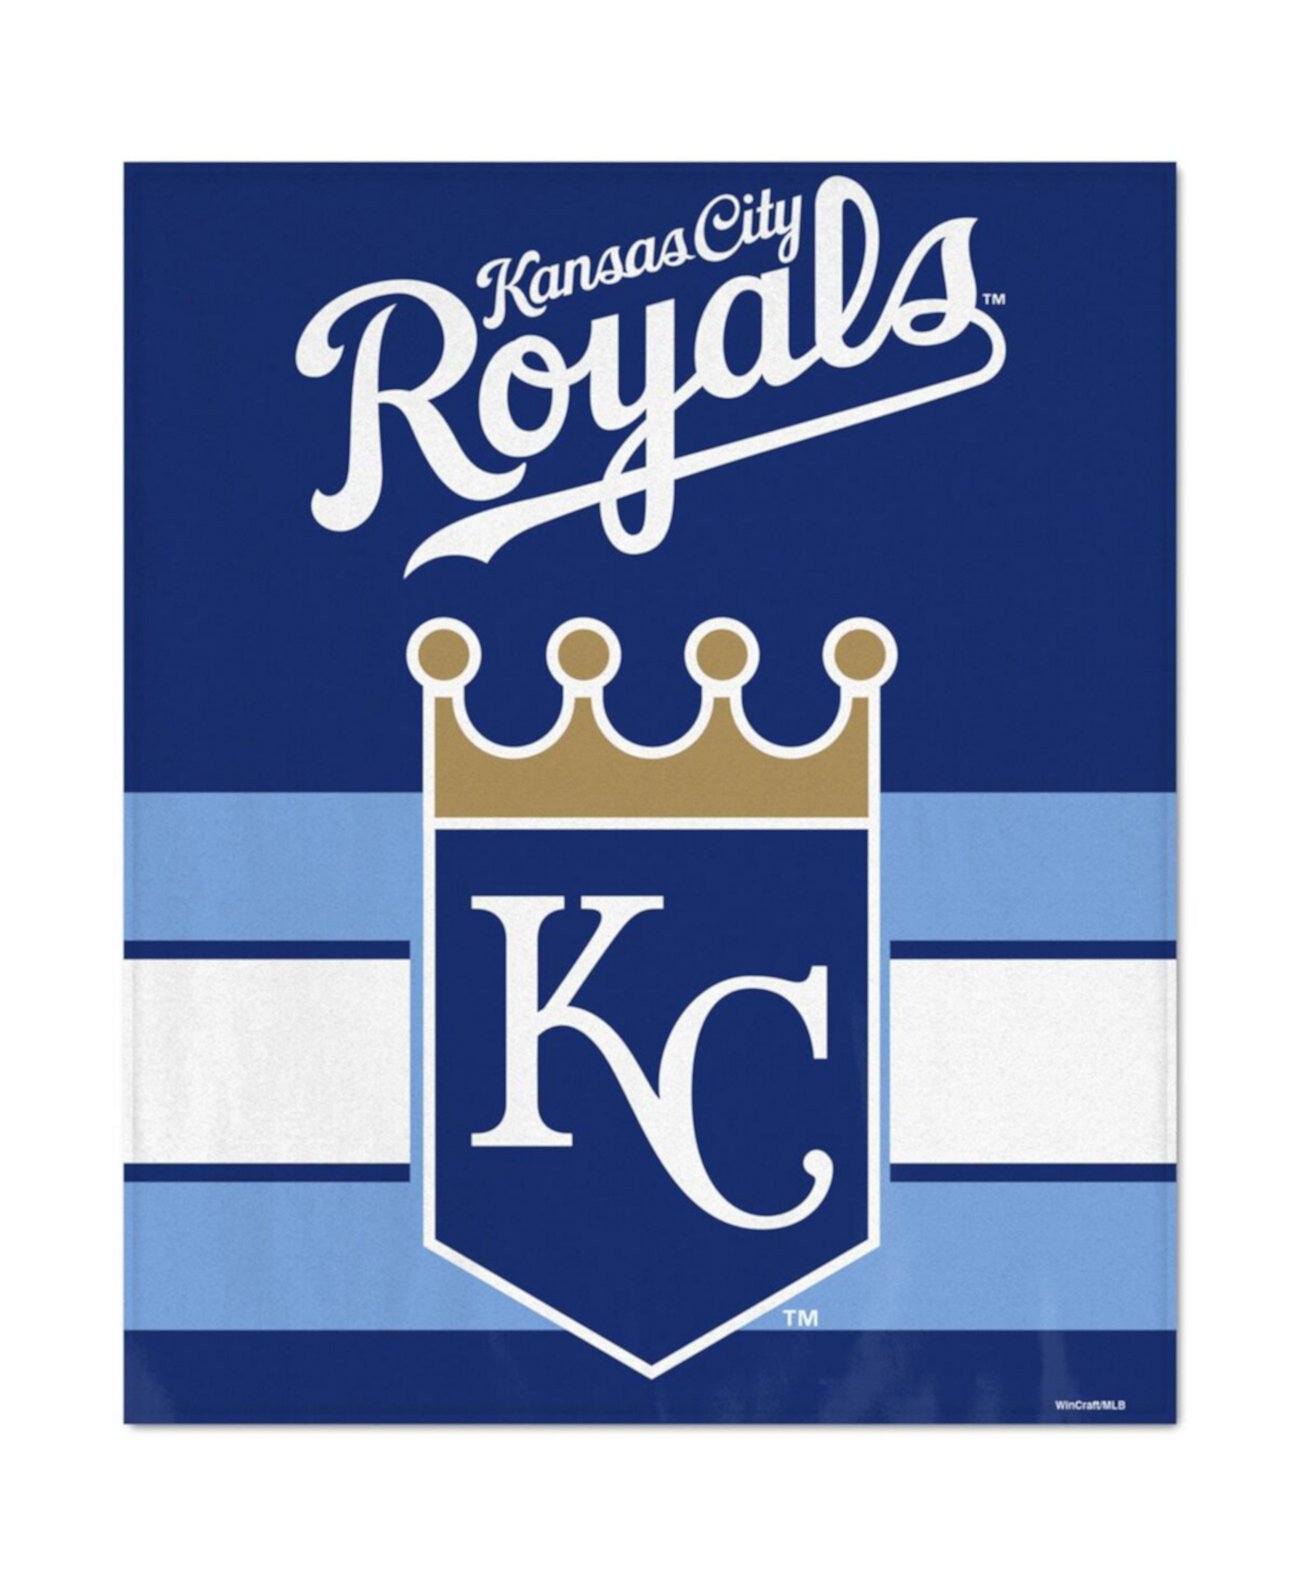 Ультраплюшевое покрывало Kansas City Royals размером 50 x 60 дюймов Wincraft